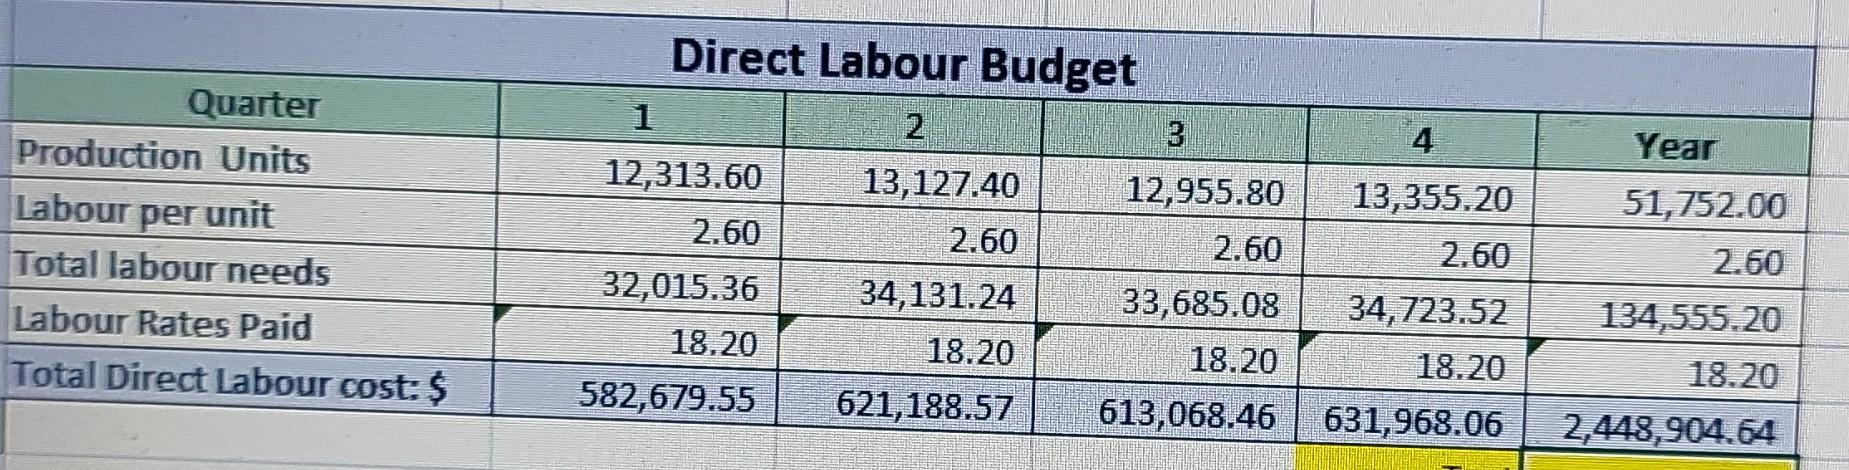 Direct Labour Budget124Year12,955.8013,355.20per unit51,752.00QuarterProduction UnitsLabourTotal labour needsLab